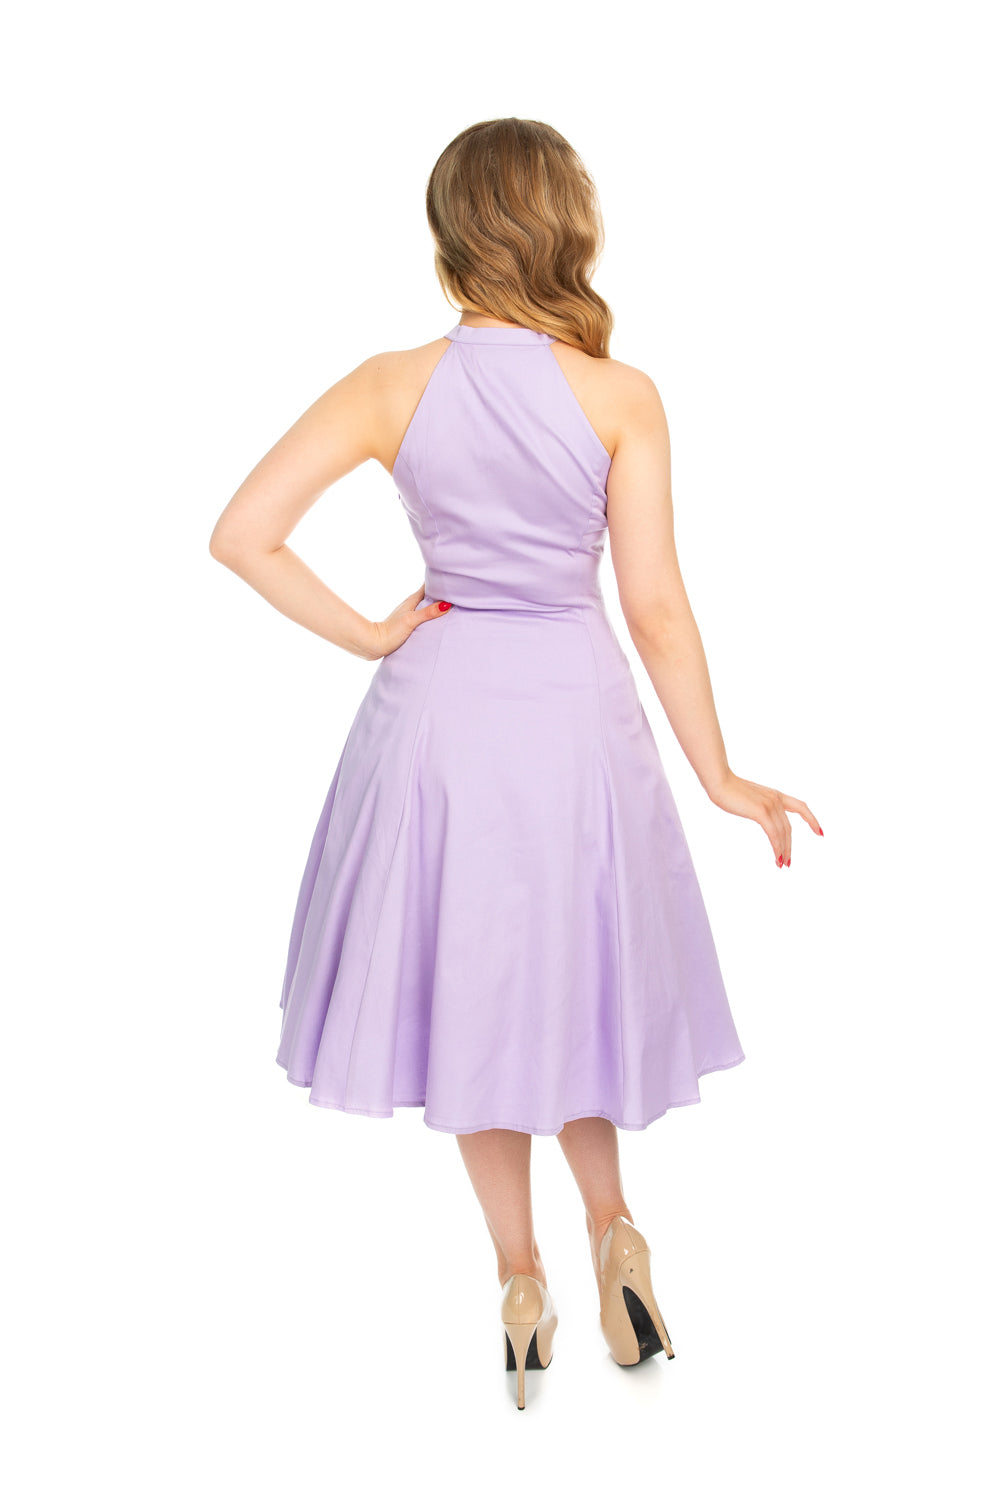 Candela Lavender Dress